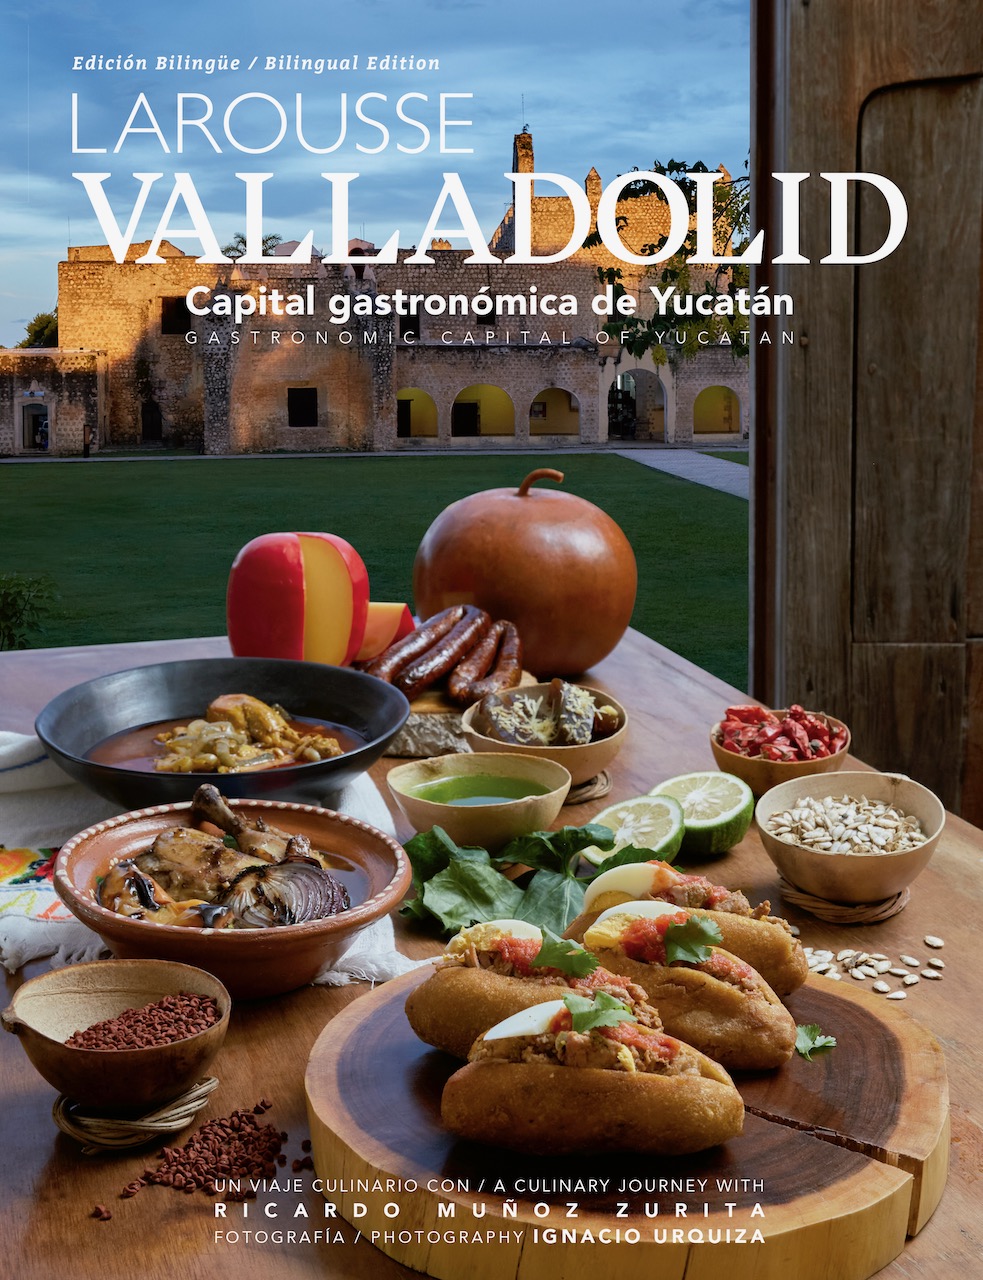 ARVAY presentará el libro “Valladolid, capital gastronómica de Yucatán” en el Museo Soumaya de la Ciudad de México